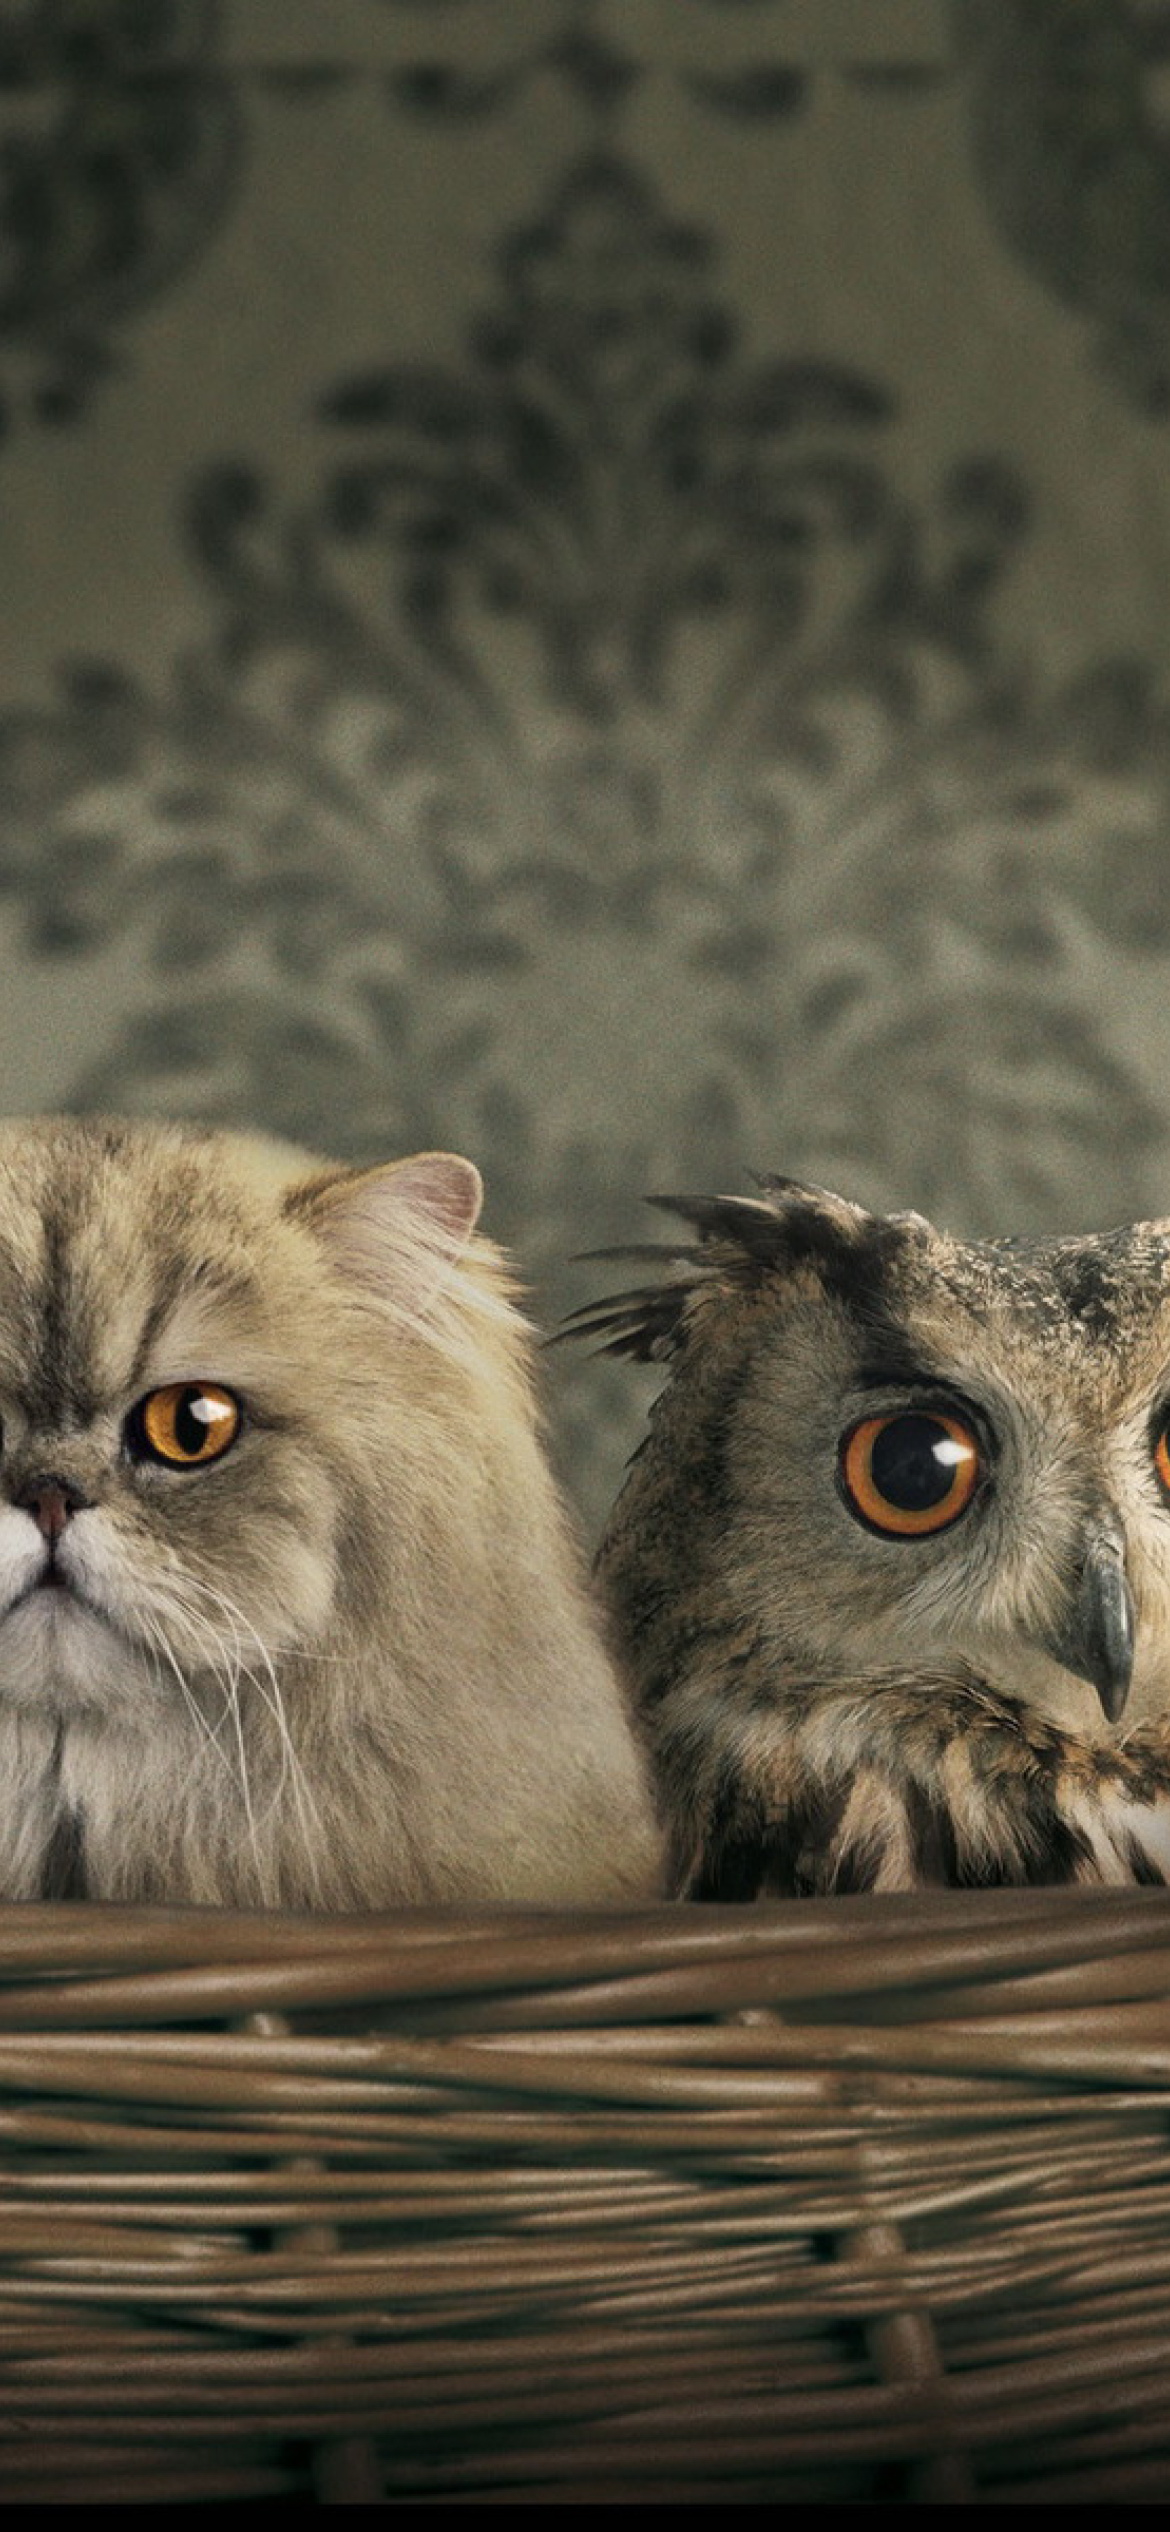 Fondo de pantalla Cats and Owl as Third Wheel 1170x2532